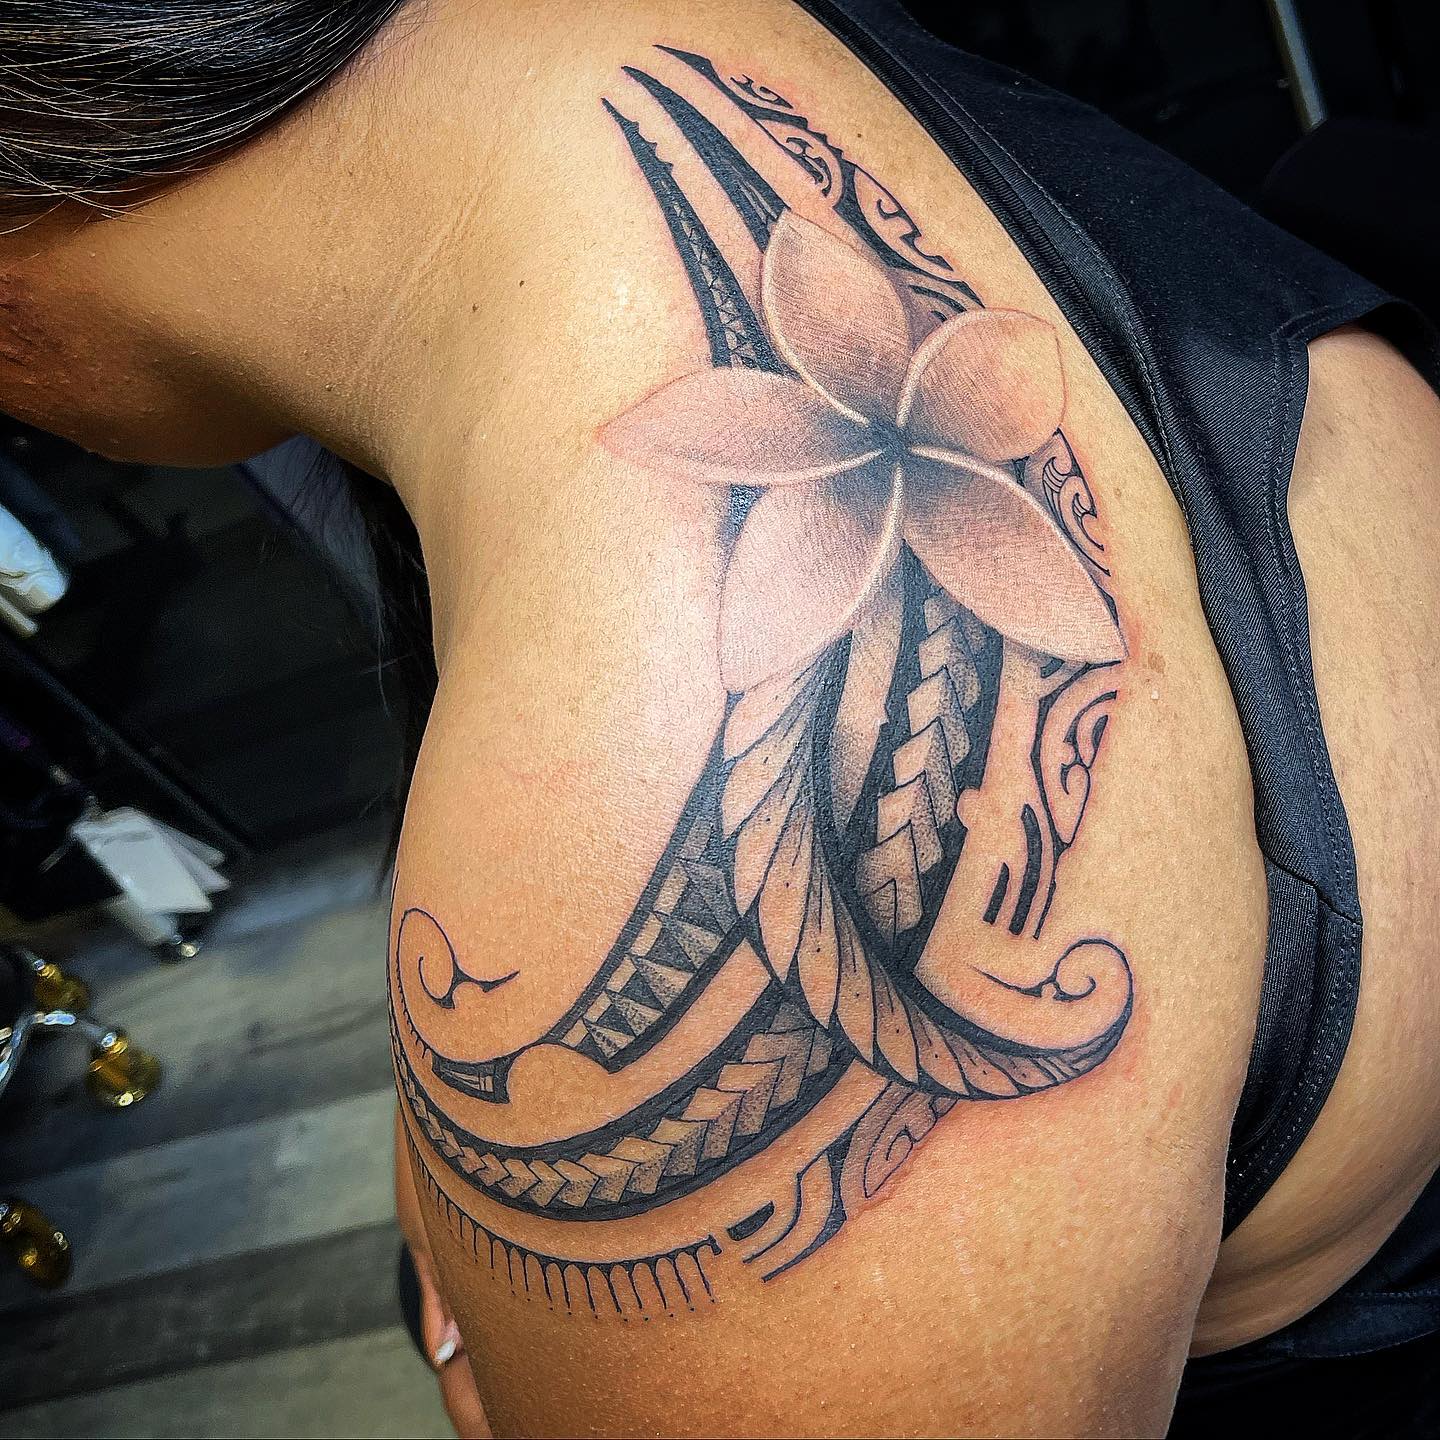 Tatuaje Tribal de Hombro en Tinta Negra